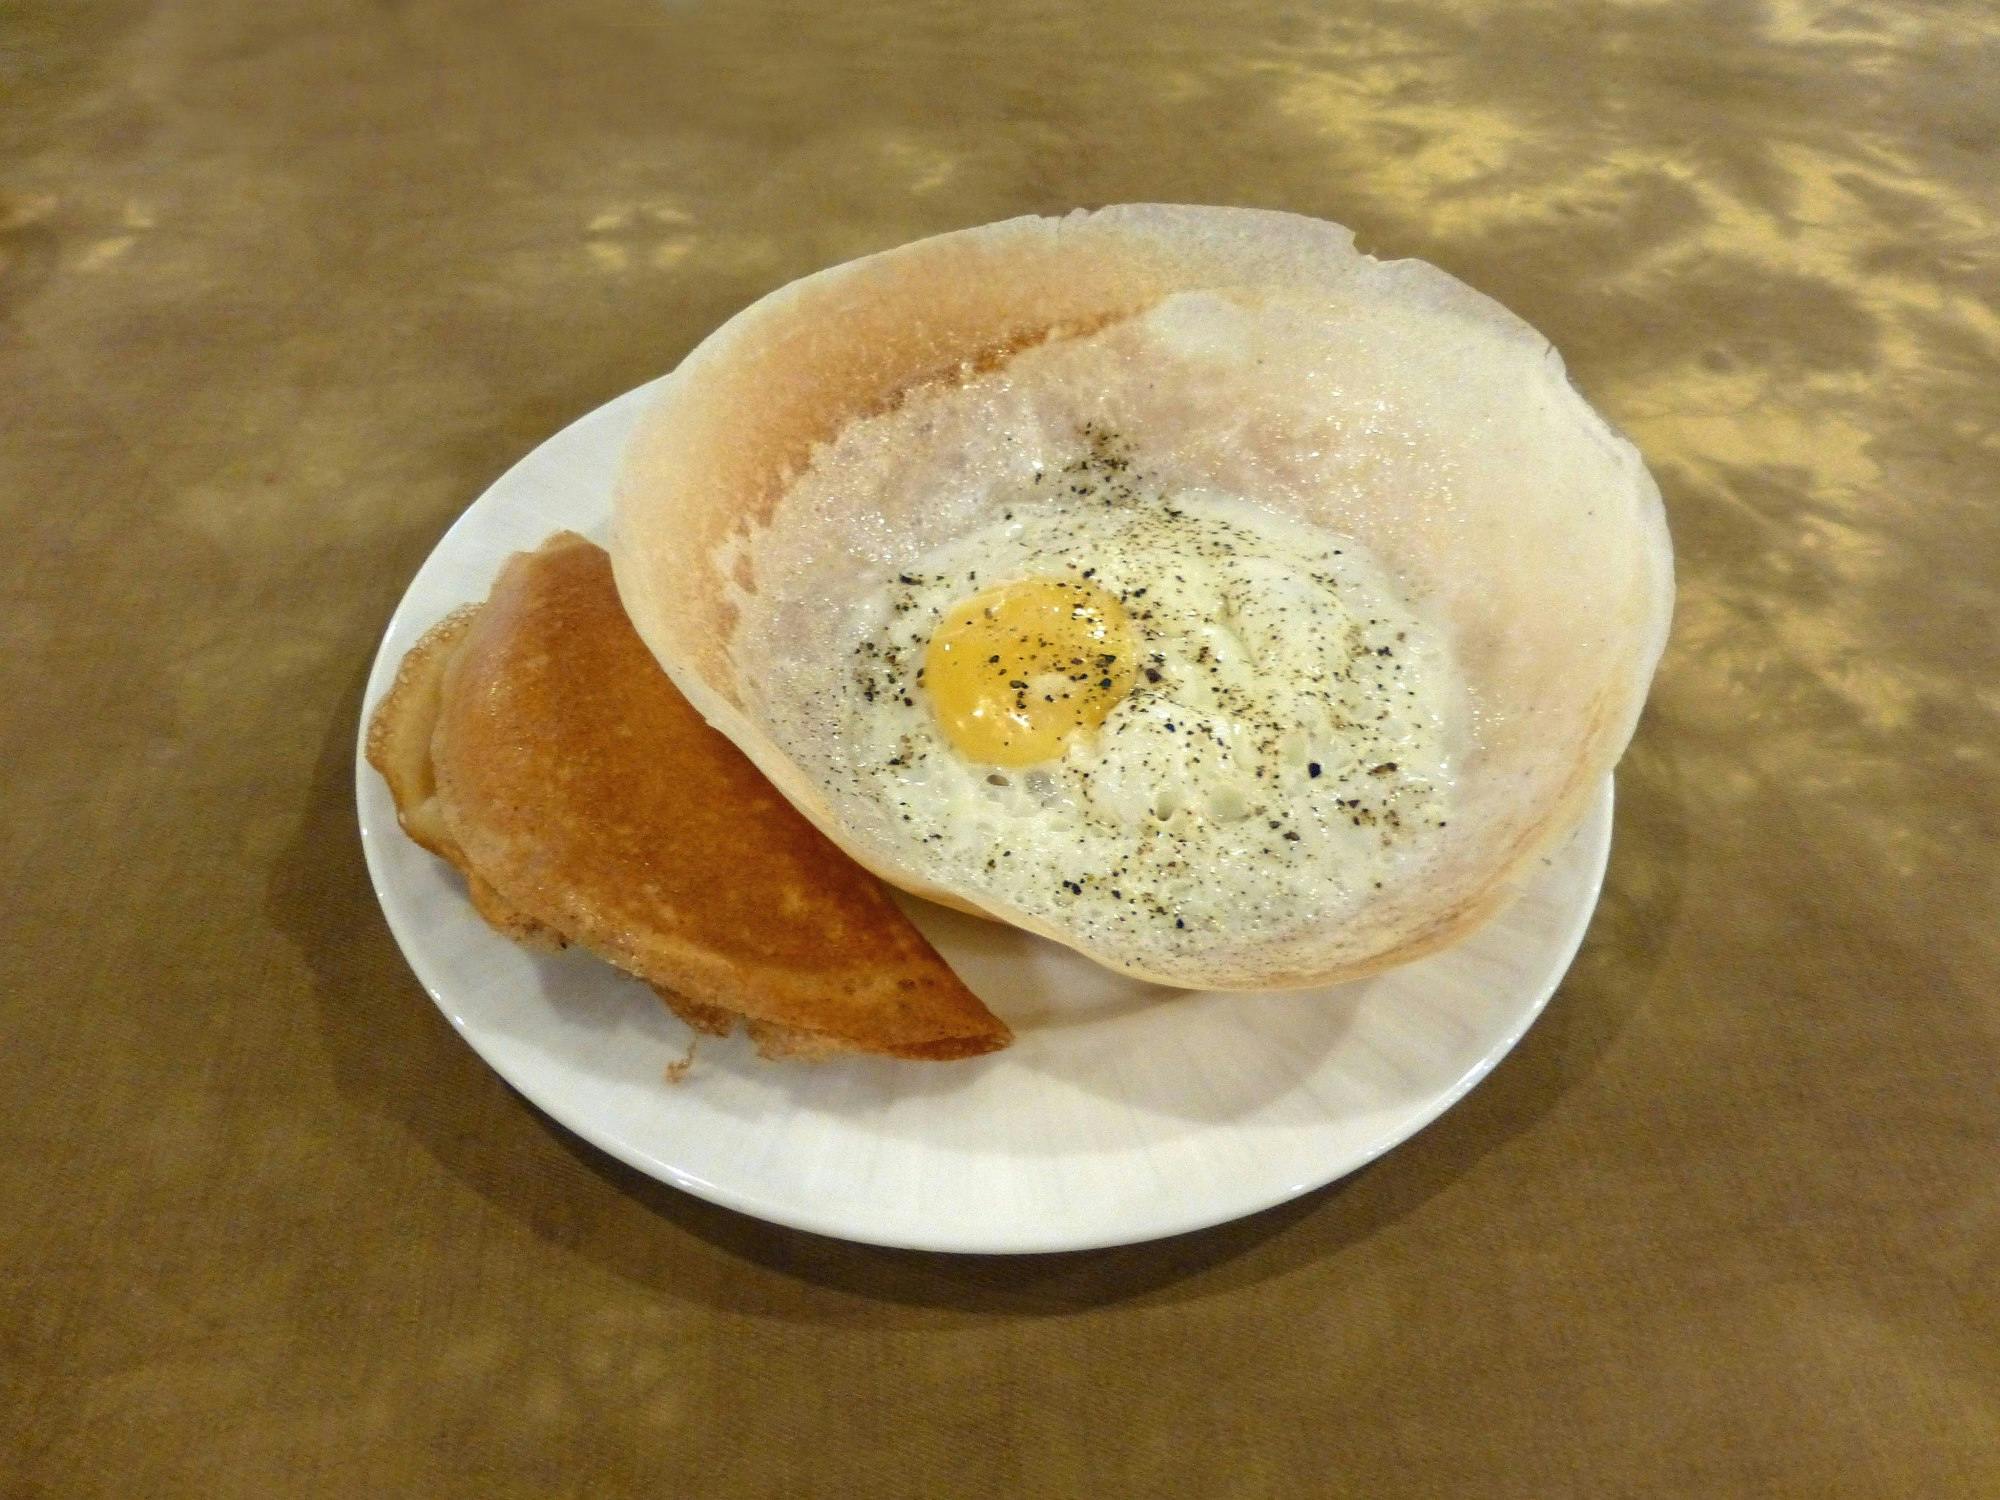 Sri Lankan egg hoppers (Wikimedia Commons)